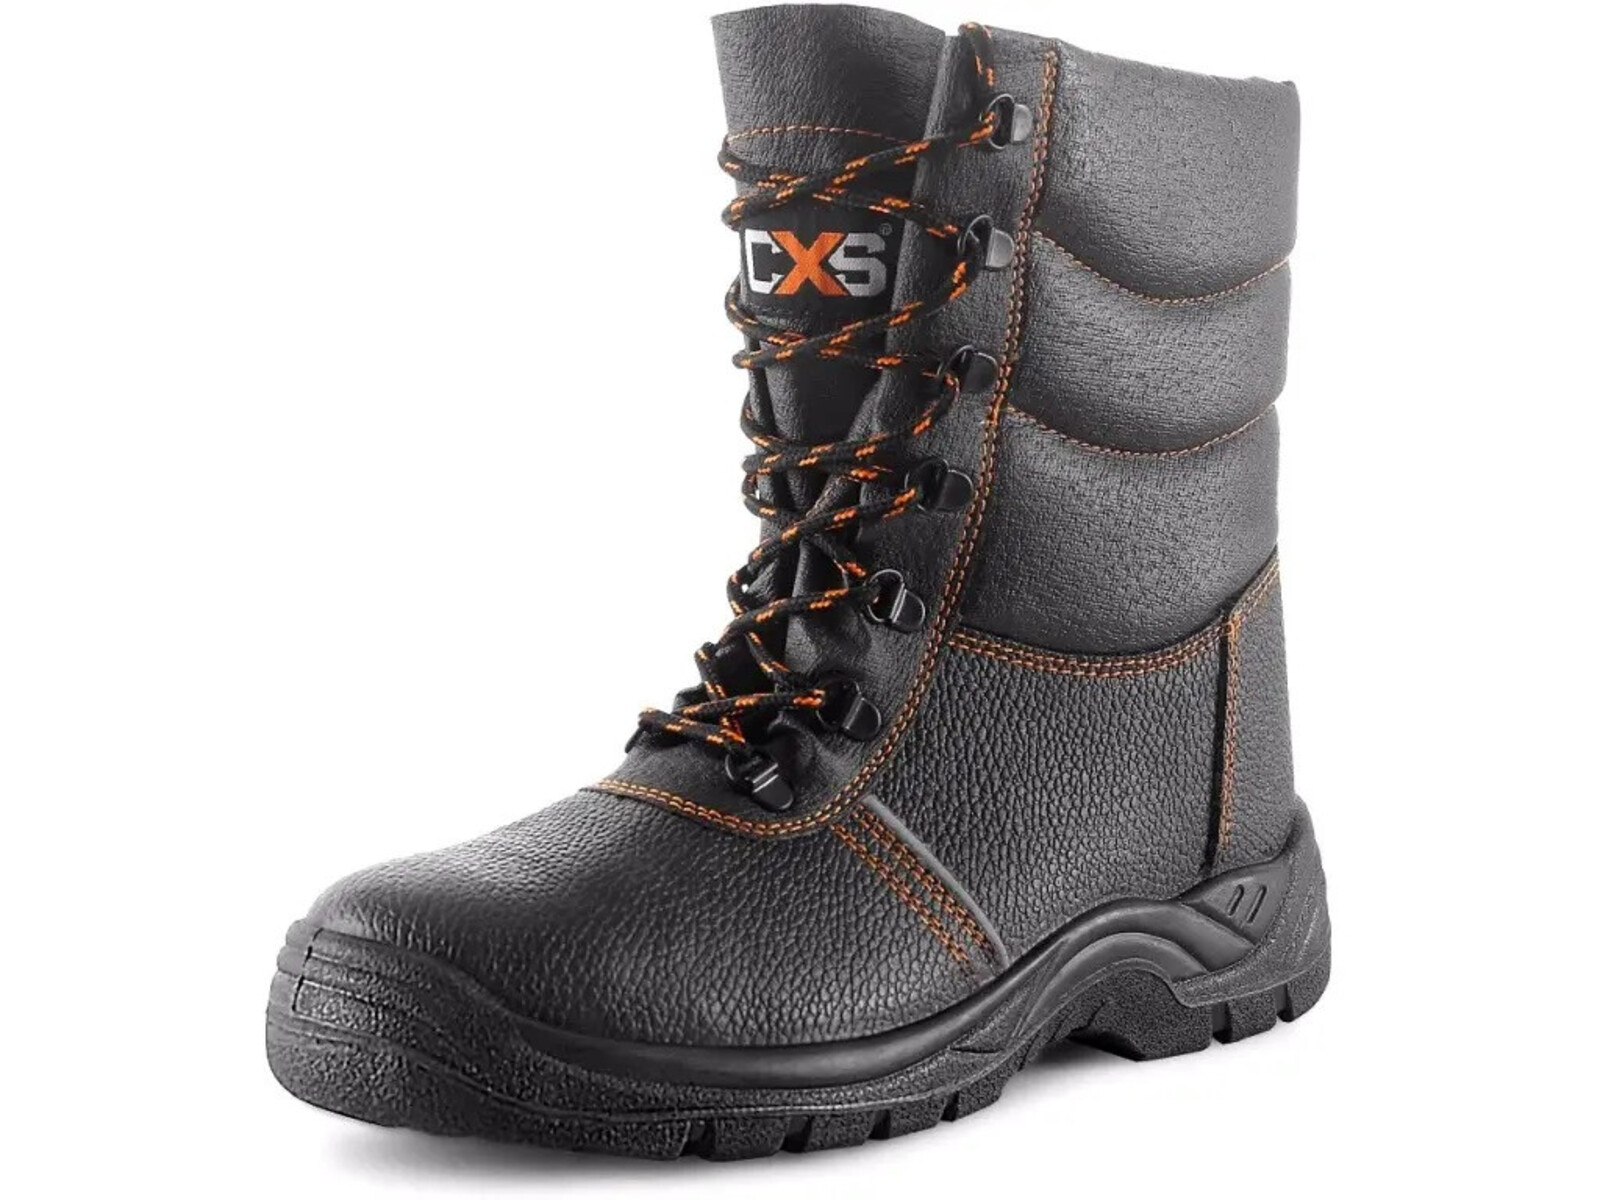 Zimná bezpečnostná poloholeňová obuv CXS Stone Topaz Winter S3 SRC - veľkosť: 50, farba: čierna/oranžová